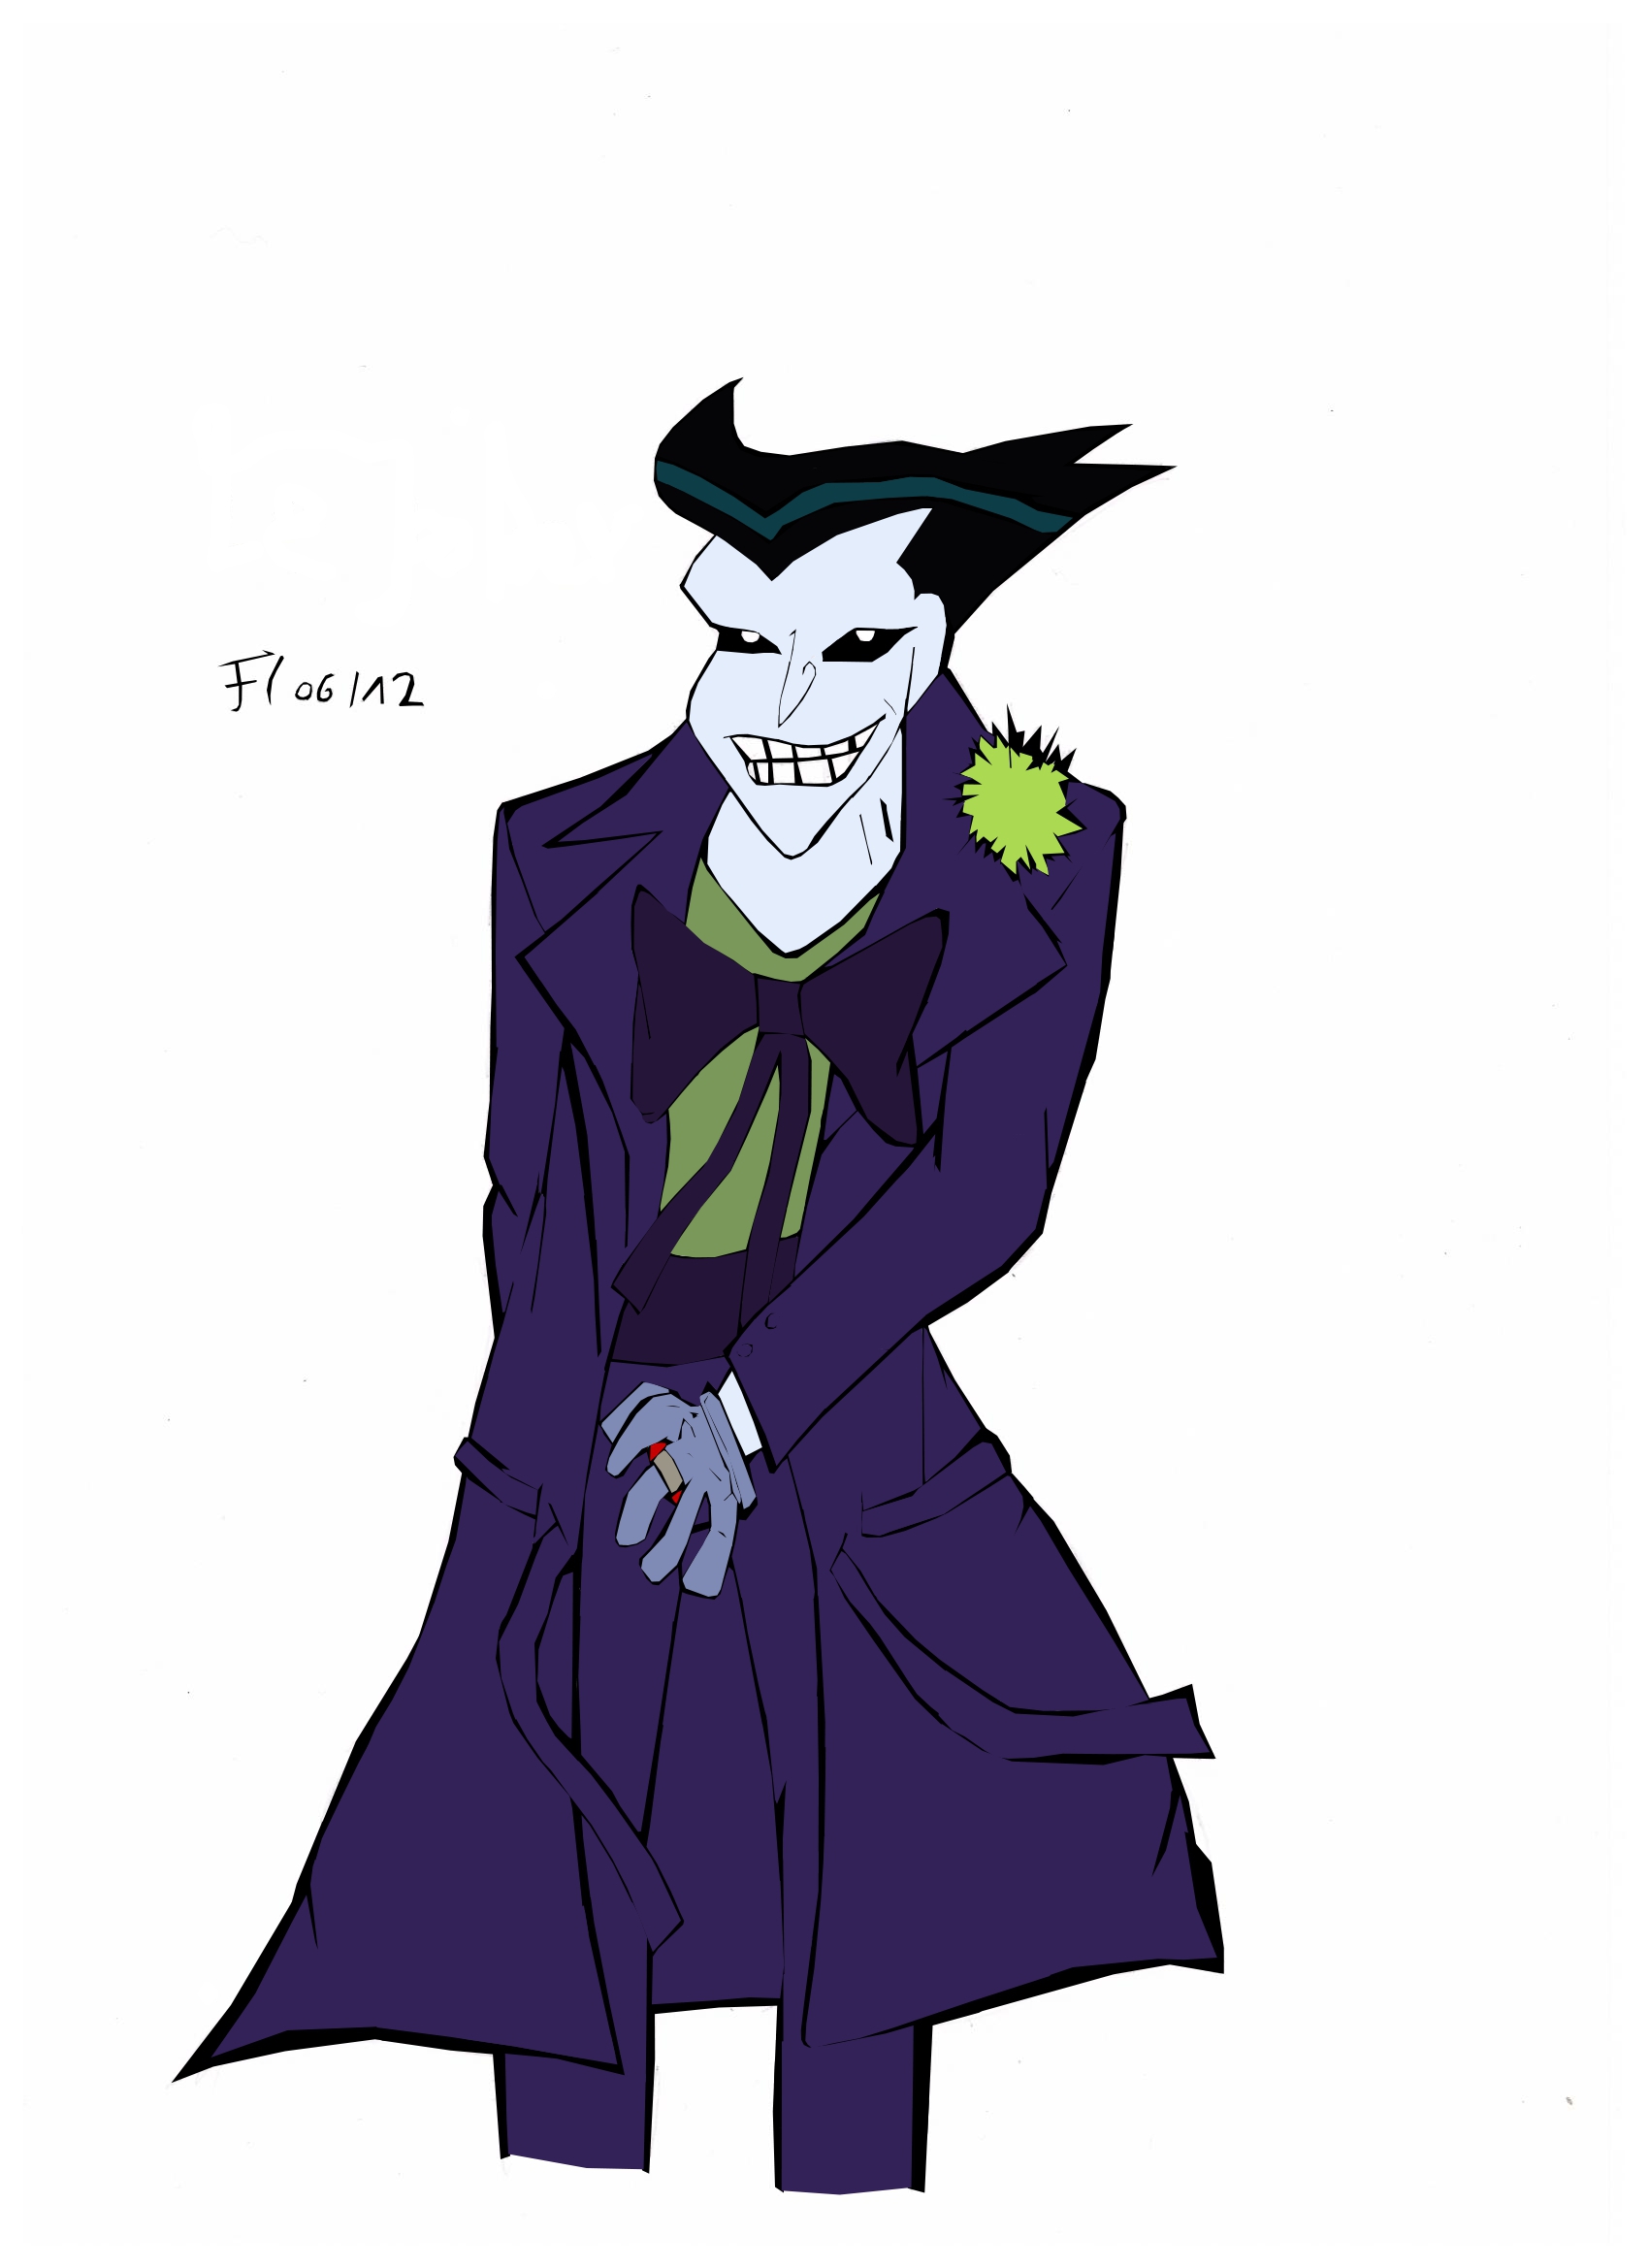 The Joker - TNBA by AvasweetsJoker on DeviantArt